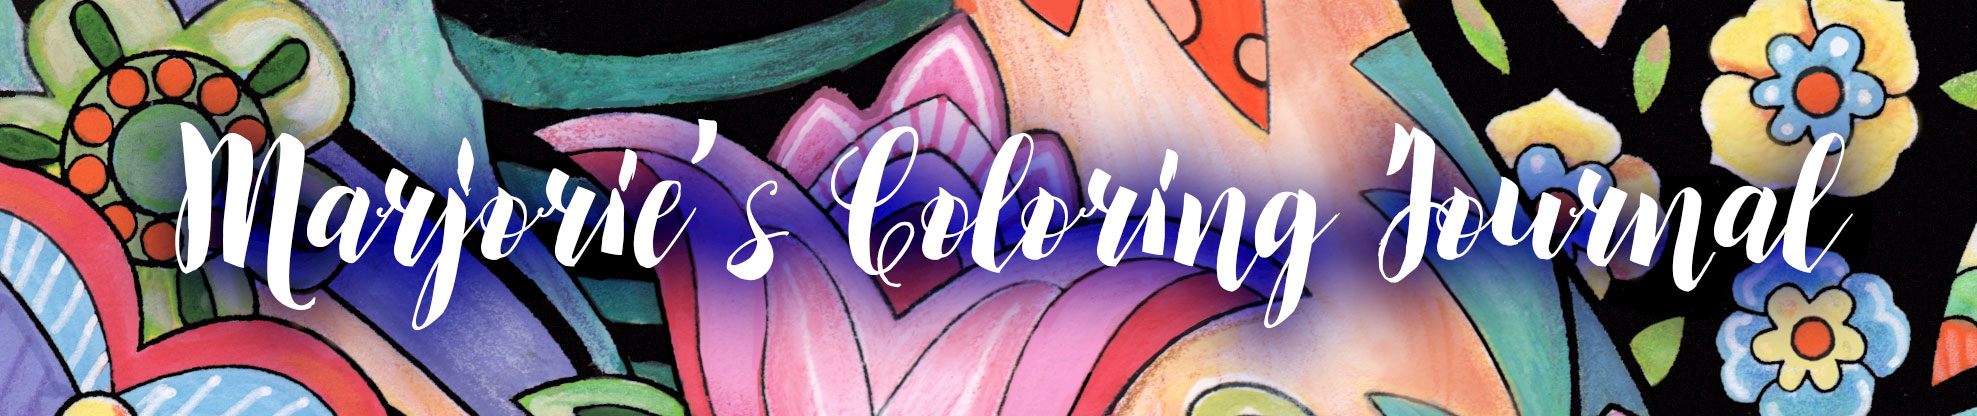 Staedtler Triplus Fineliner Review Update: 48 Color Set — Marjorie Sarnat  Design & Illustration